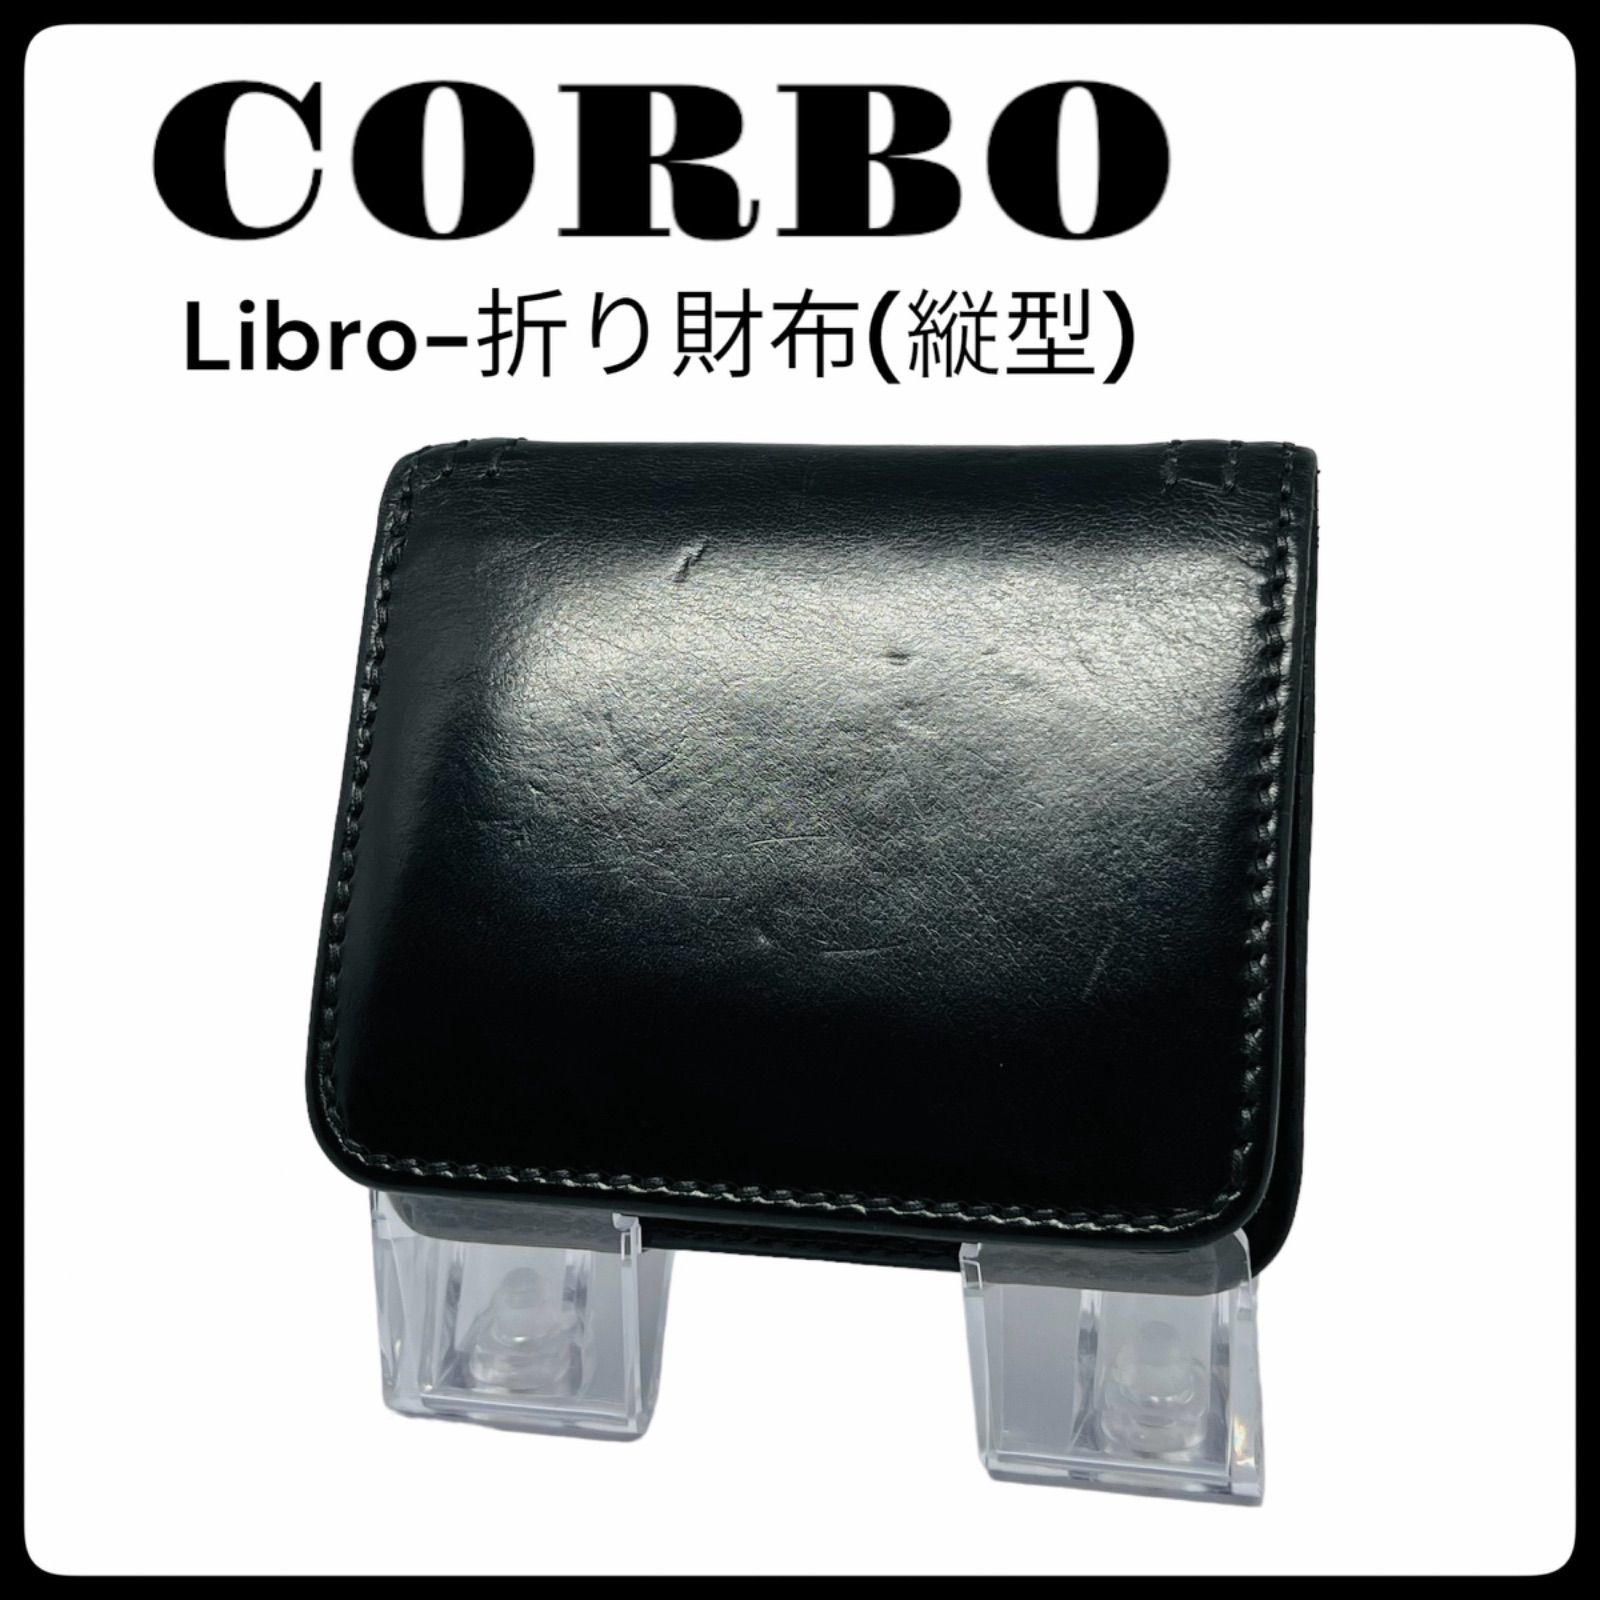 中古】CORBO Libro-折財布(縦型) BKブラック コルボ リーブロ 二つ折り